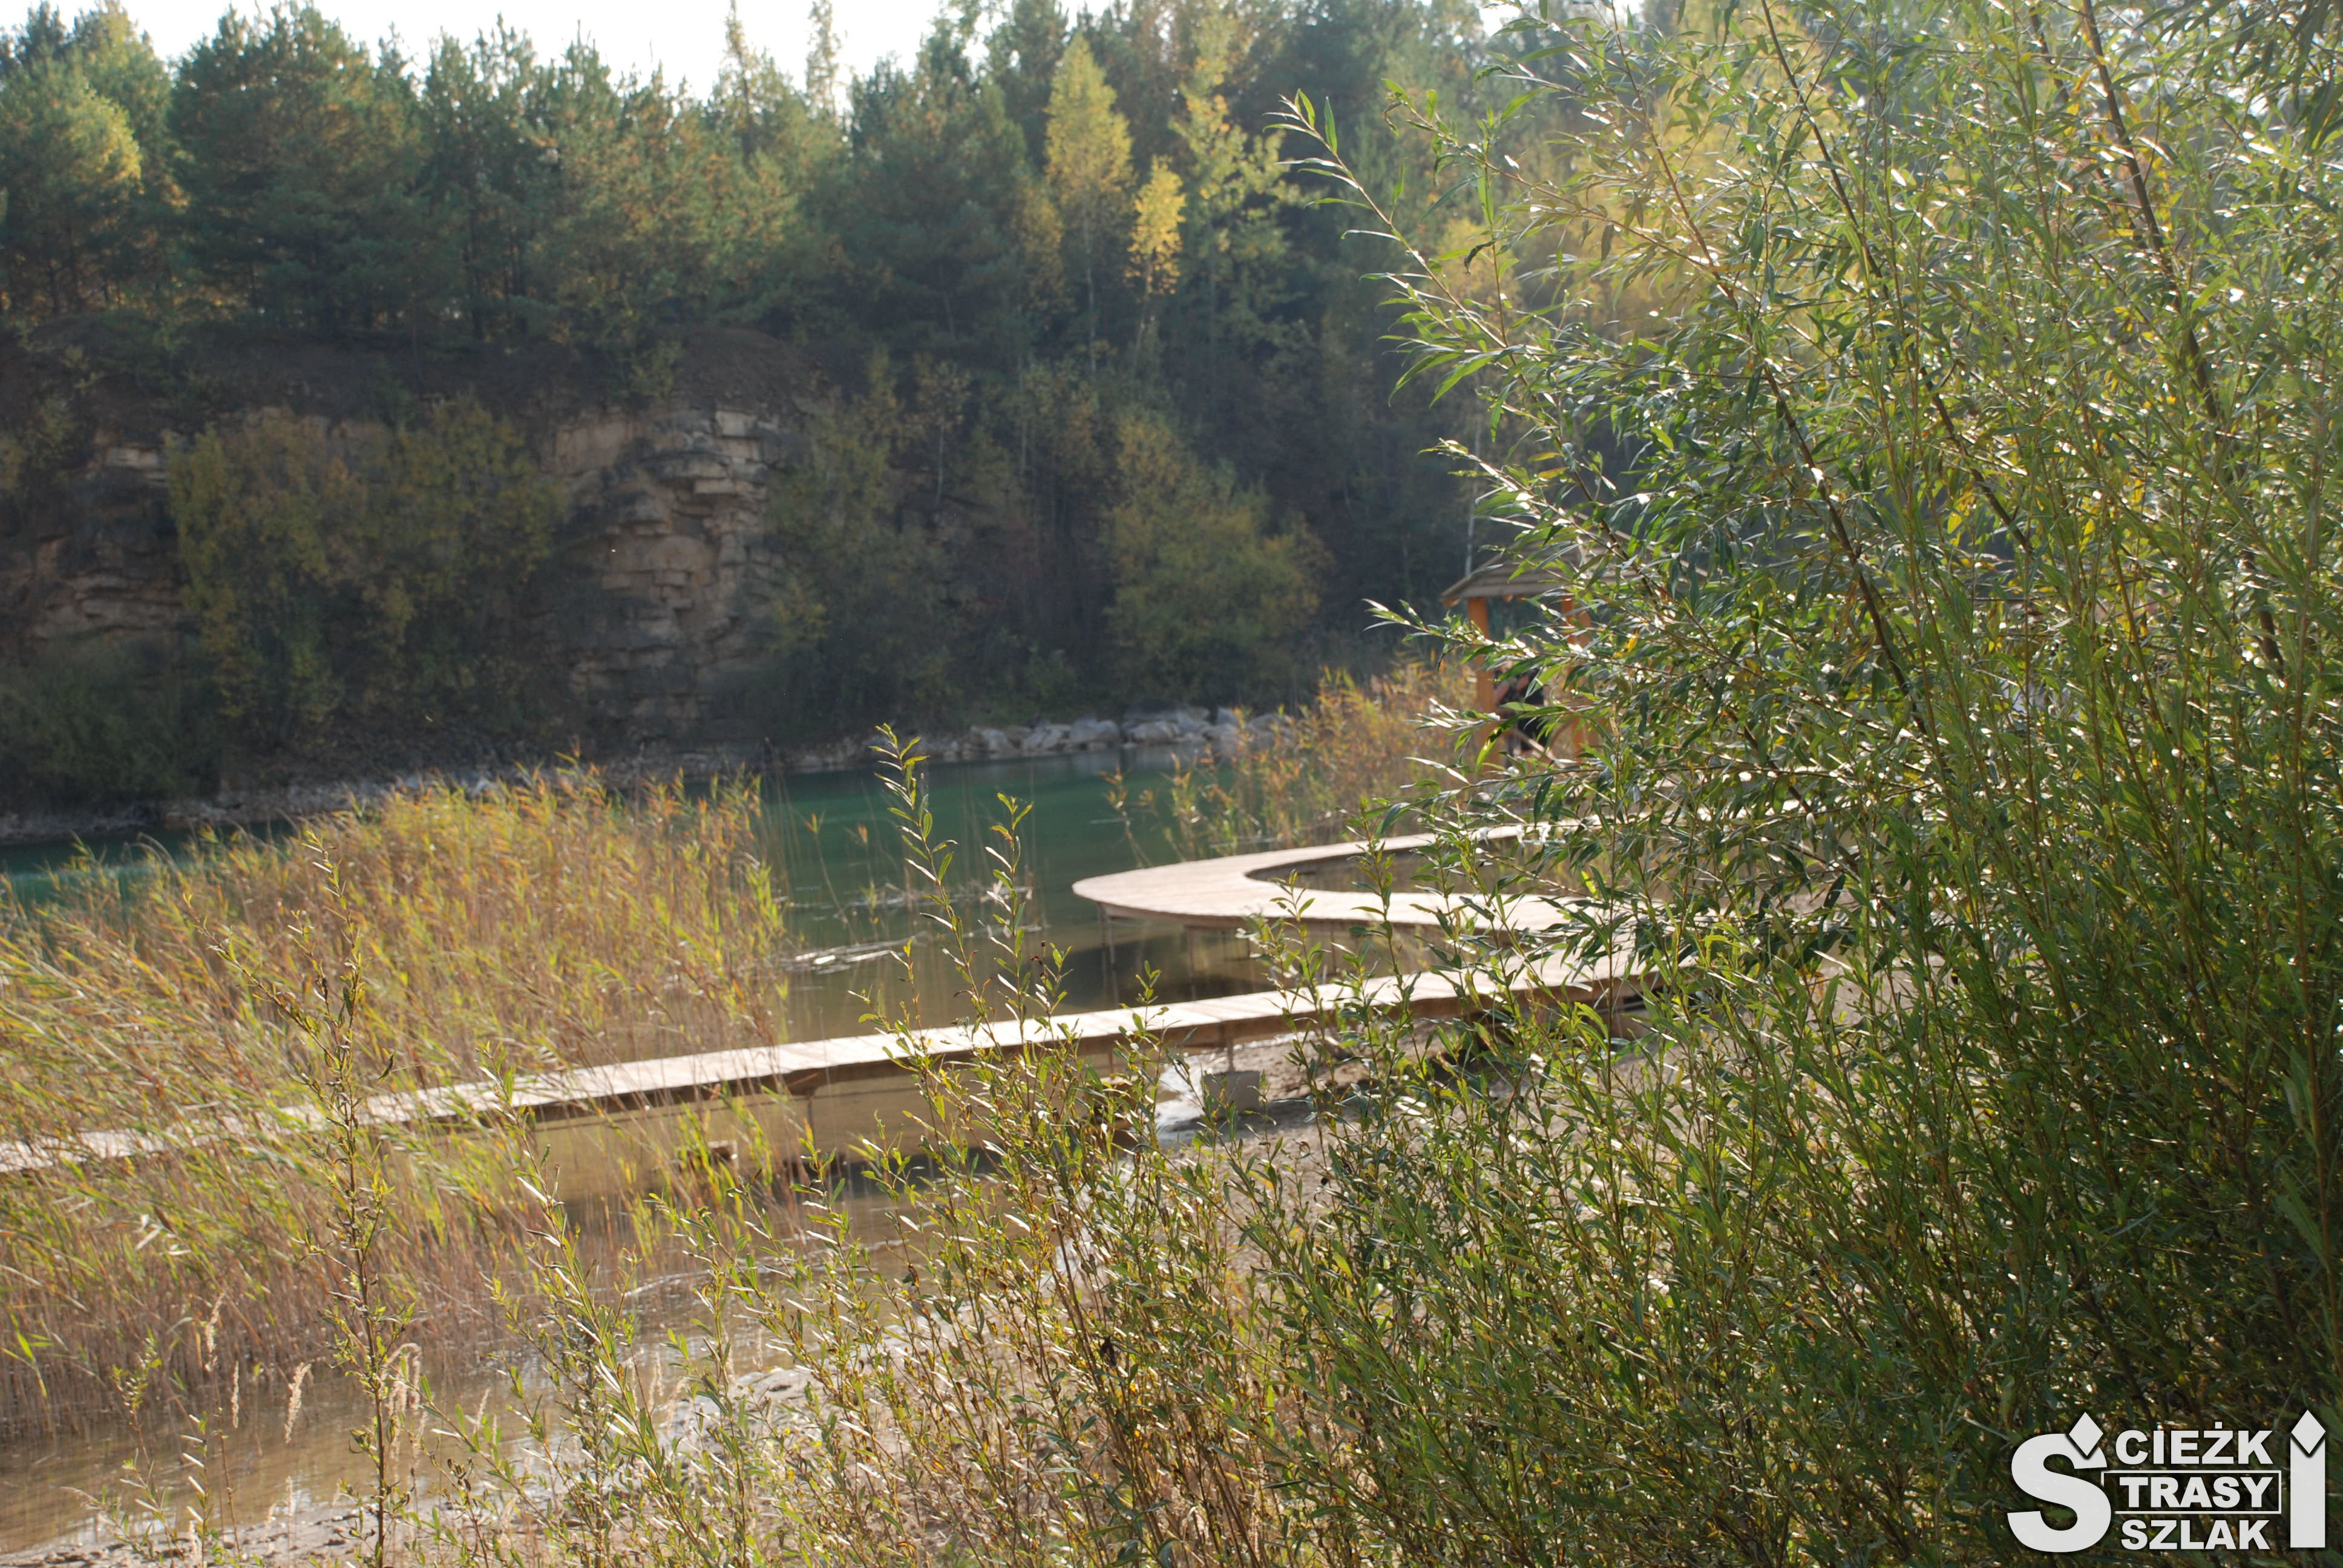 Kręta kładka z drewna nad taflą wody zbiornika wydra w Parku Gródek z drewnianymi domkami